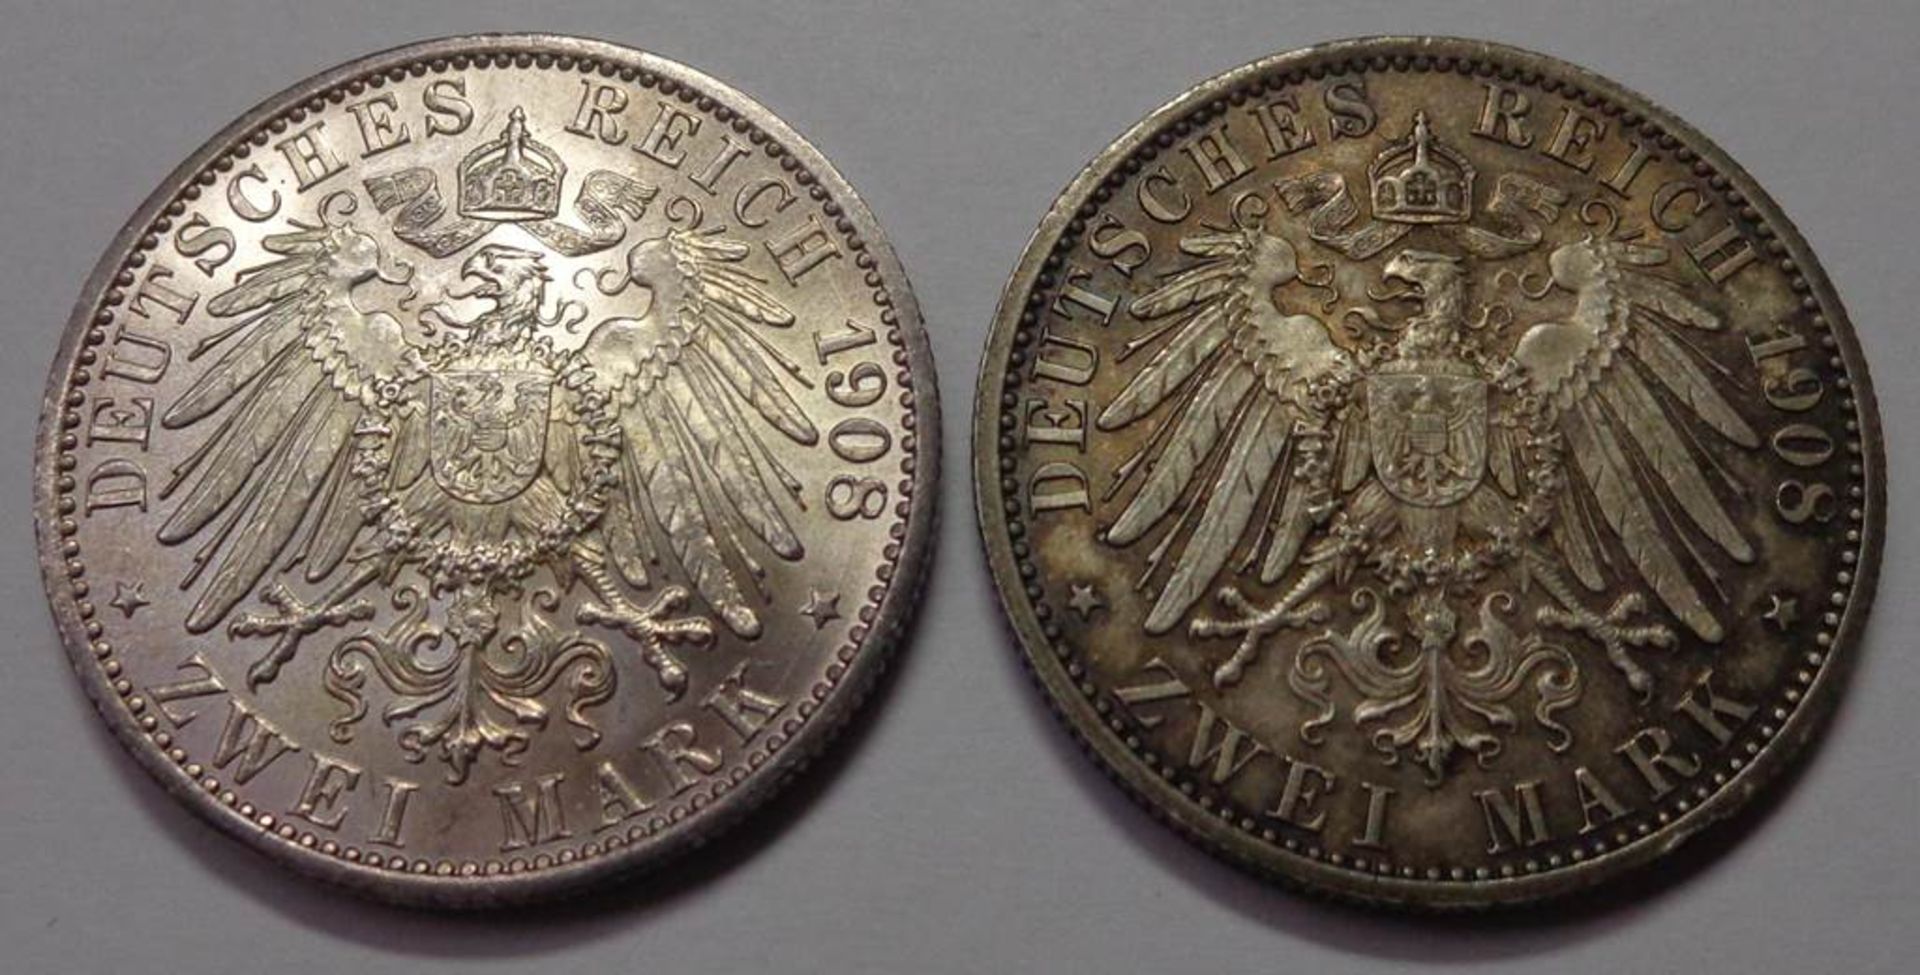 2x Zwei Mark, Deutsches Reich 1908, Sachsen-Weimar-Eisenach, Universität Jena, ss-vz., zus. 22,22 - Bild 2 aus 2